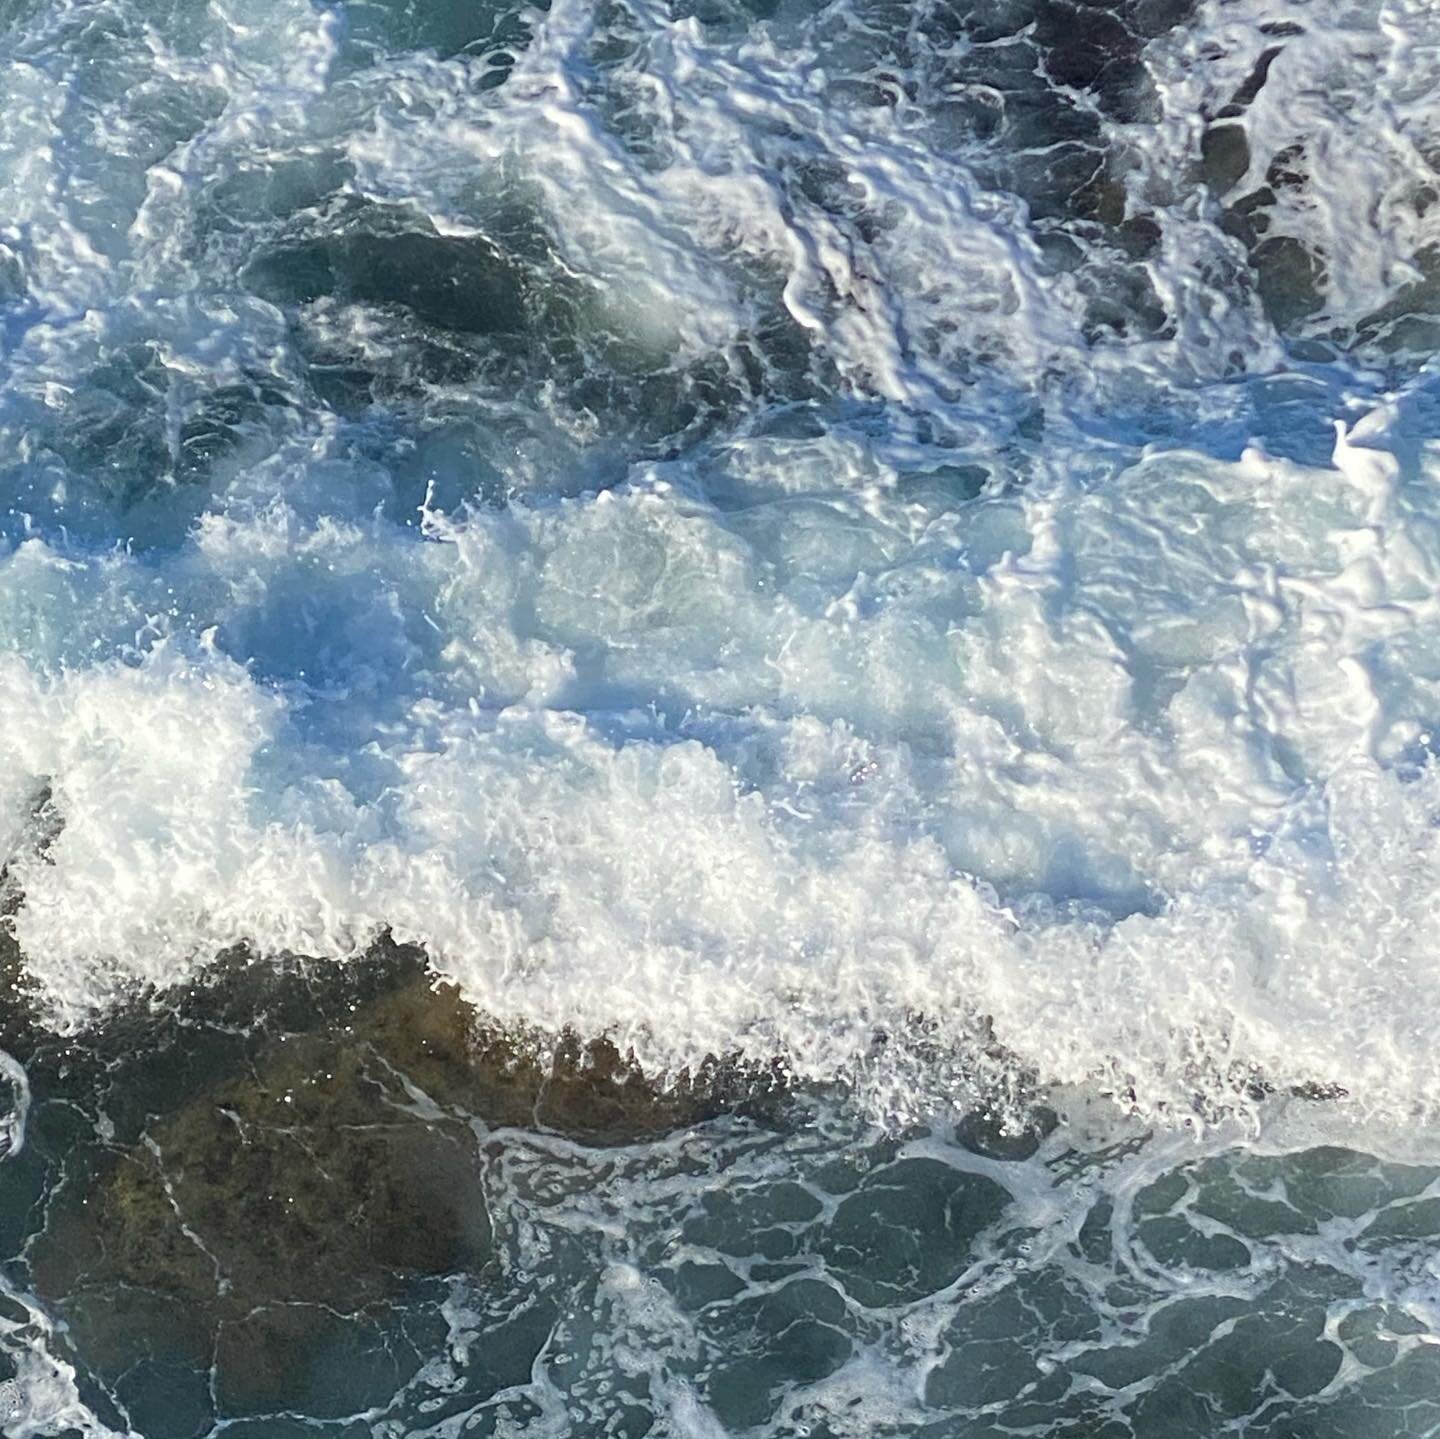 So pleased I got that walk in the sunshine yesterday! Stunning waters at Bondi Beach! #crashingwaves #bondibeach #thesea #waters #sydneybeaches #lockdownwalk #waves #bondibeachsydney #walking #sydneylockdown #whatson